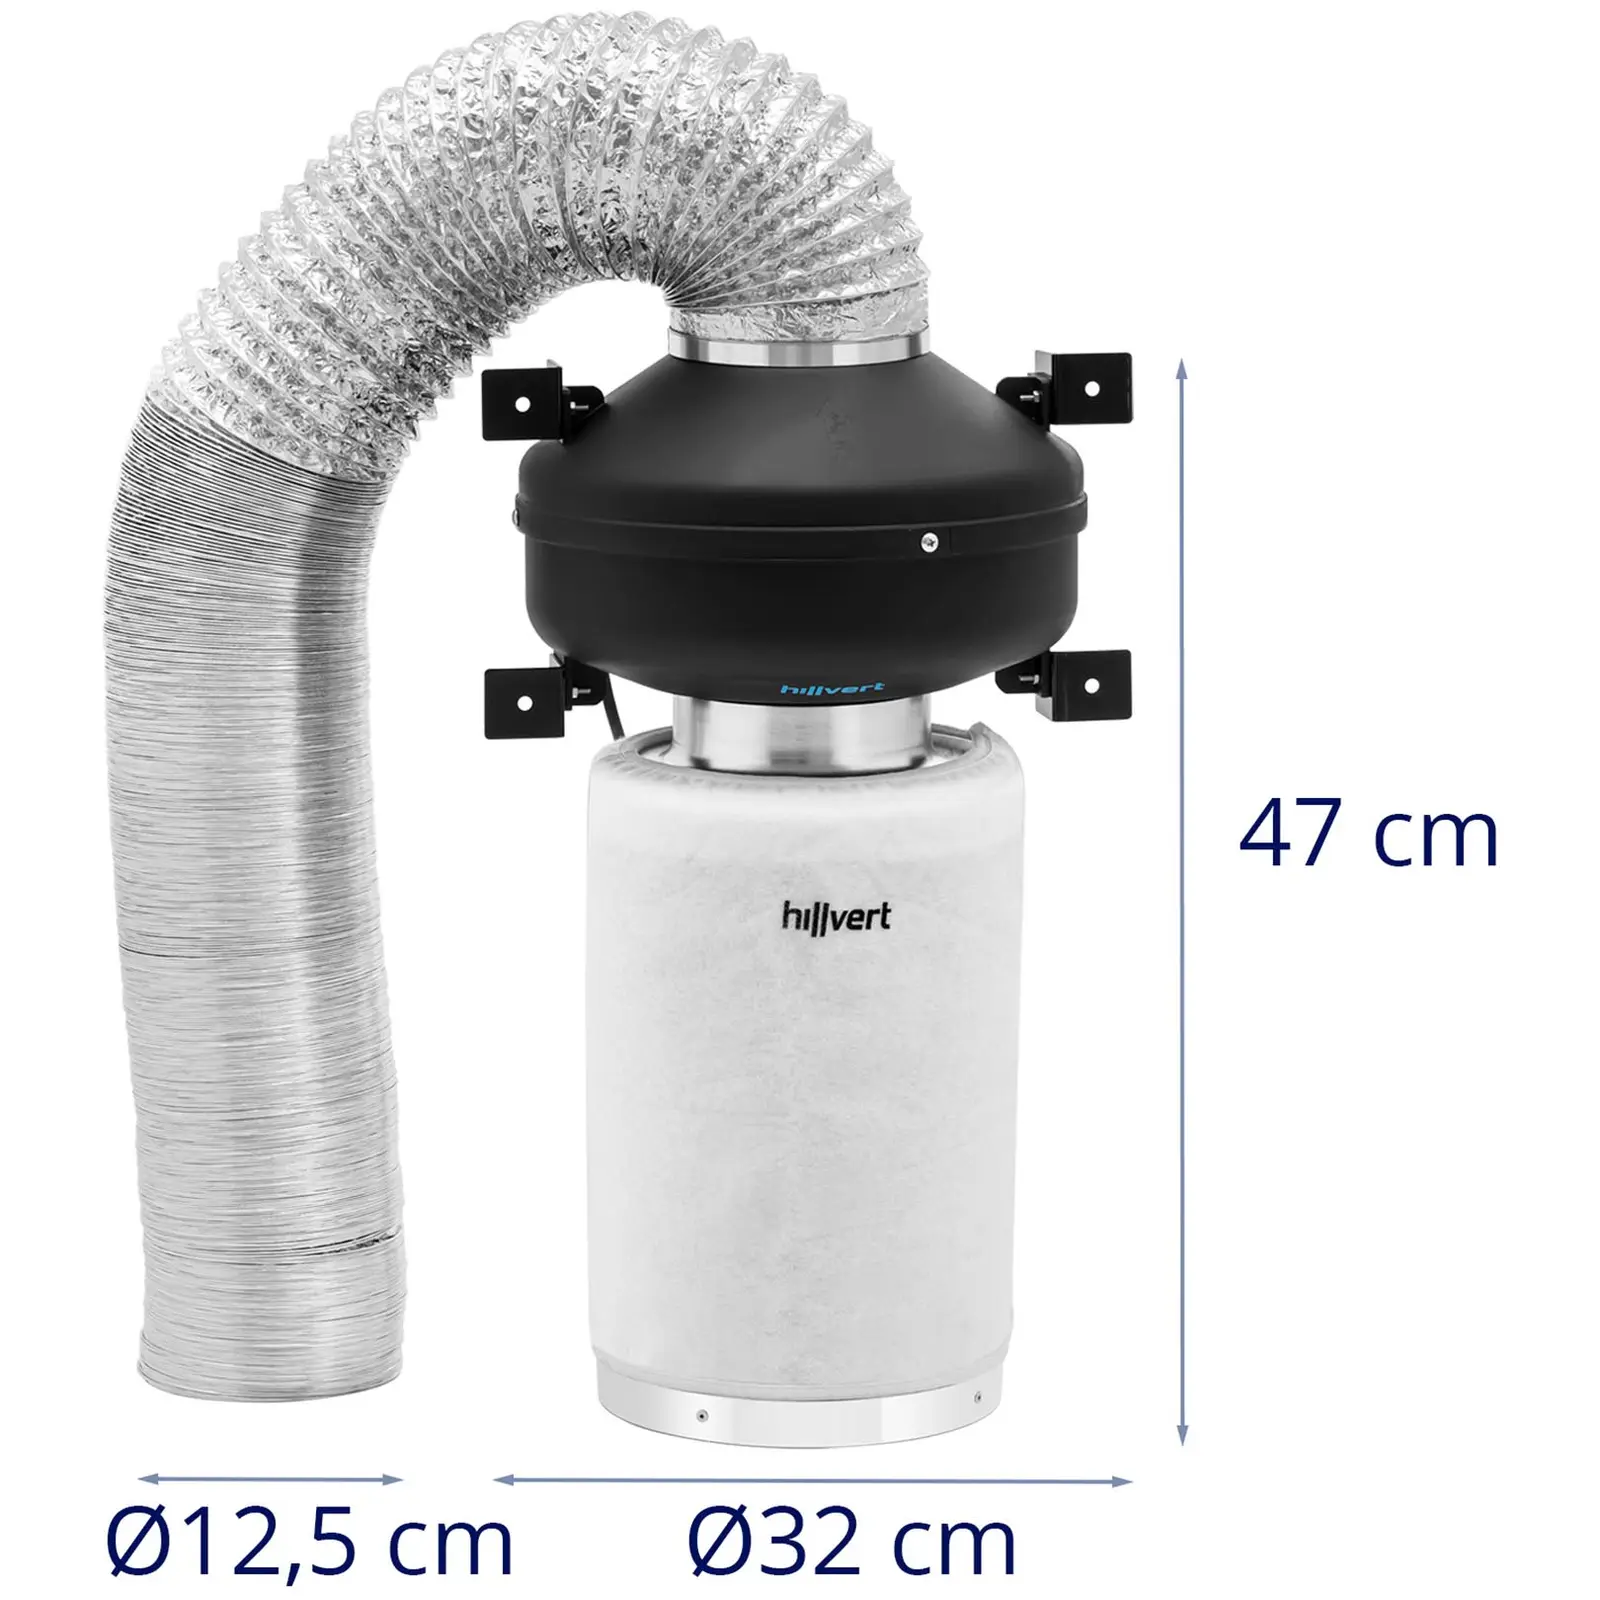 Sada pro odsávání vzduchu - filtr s aktivním uhlím / potrubní ventilátor / hadice pro odsávání vzduchu - Ø 130 mm výstupní otvor